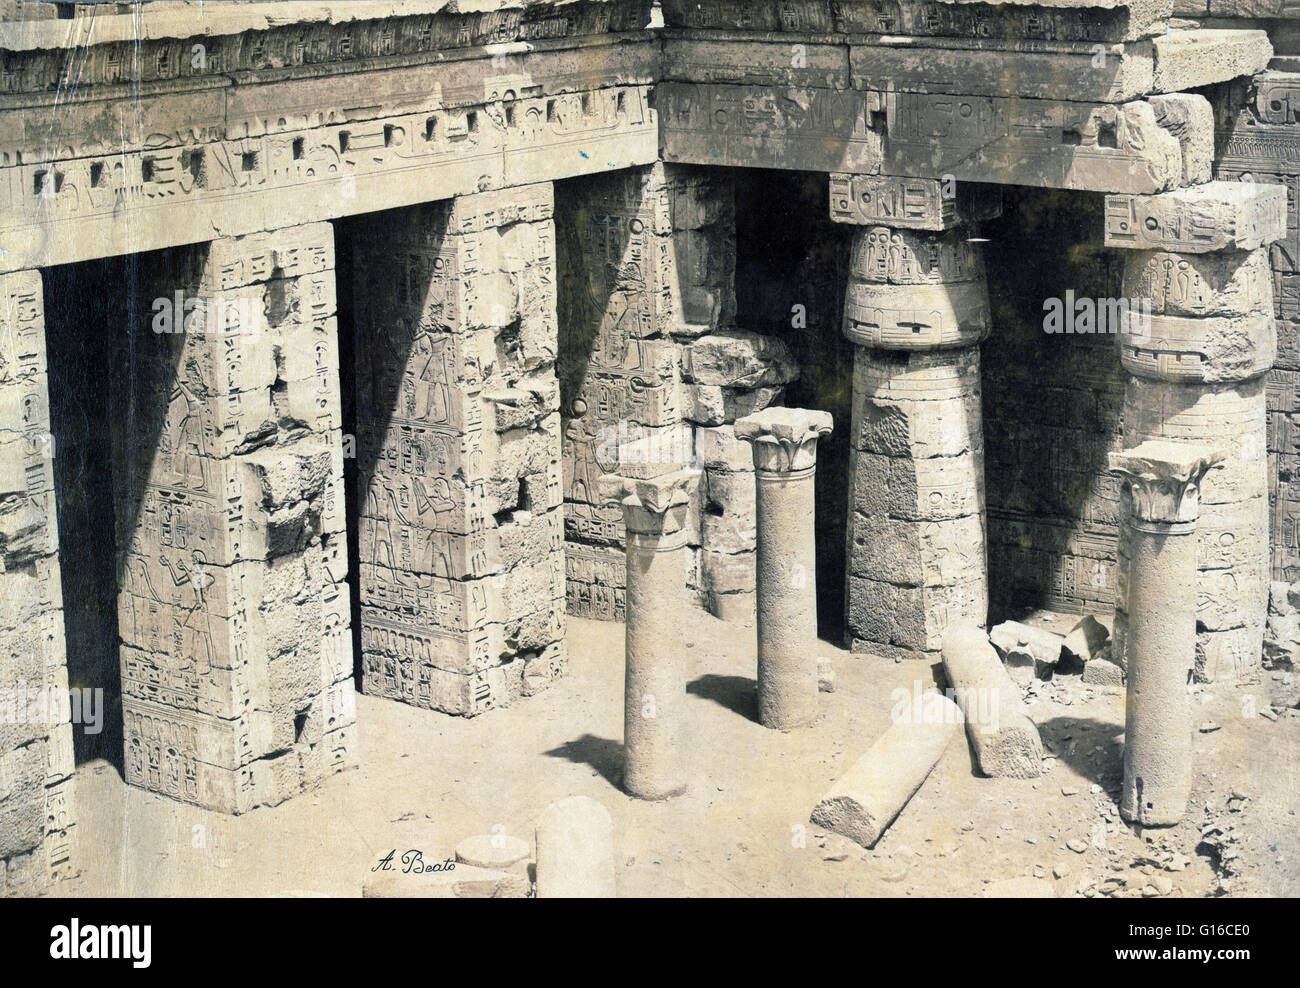 Unter dem Titel: "Ruinen von den zweiten Hof auf der Rückseite der Palast/Tempel von Ramses III in Medinet Habu, Theben, Ägypten, fotografiert von Antonio Beato ca. 1870-1900. Medinet Habu ist die Bezeichnung häufig an der Leichenhalle Tempel von Ramses III, eine wichtige Stockfoto